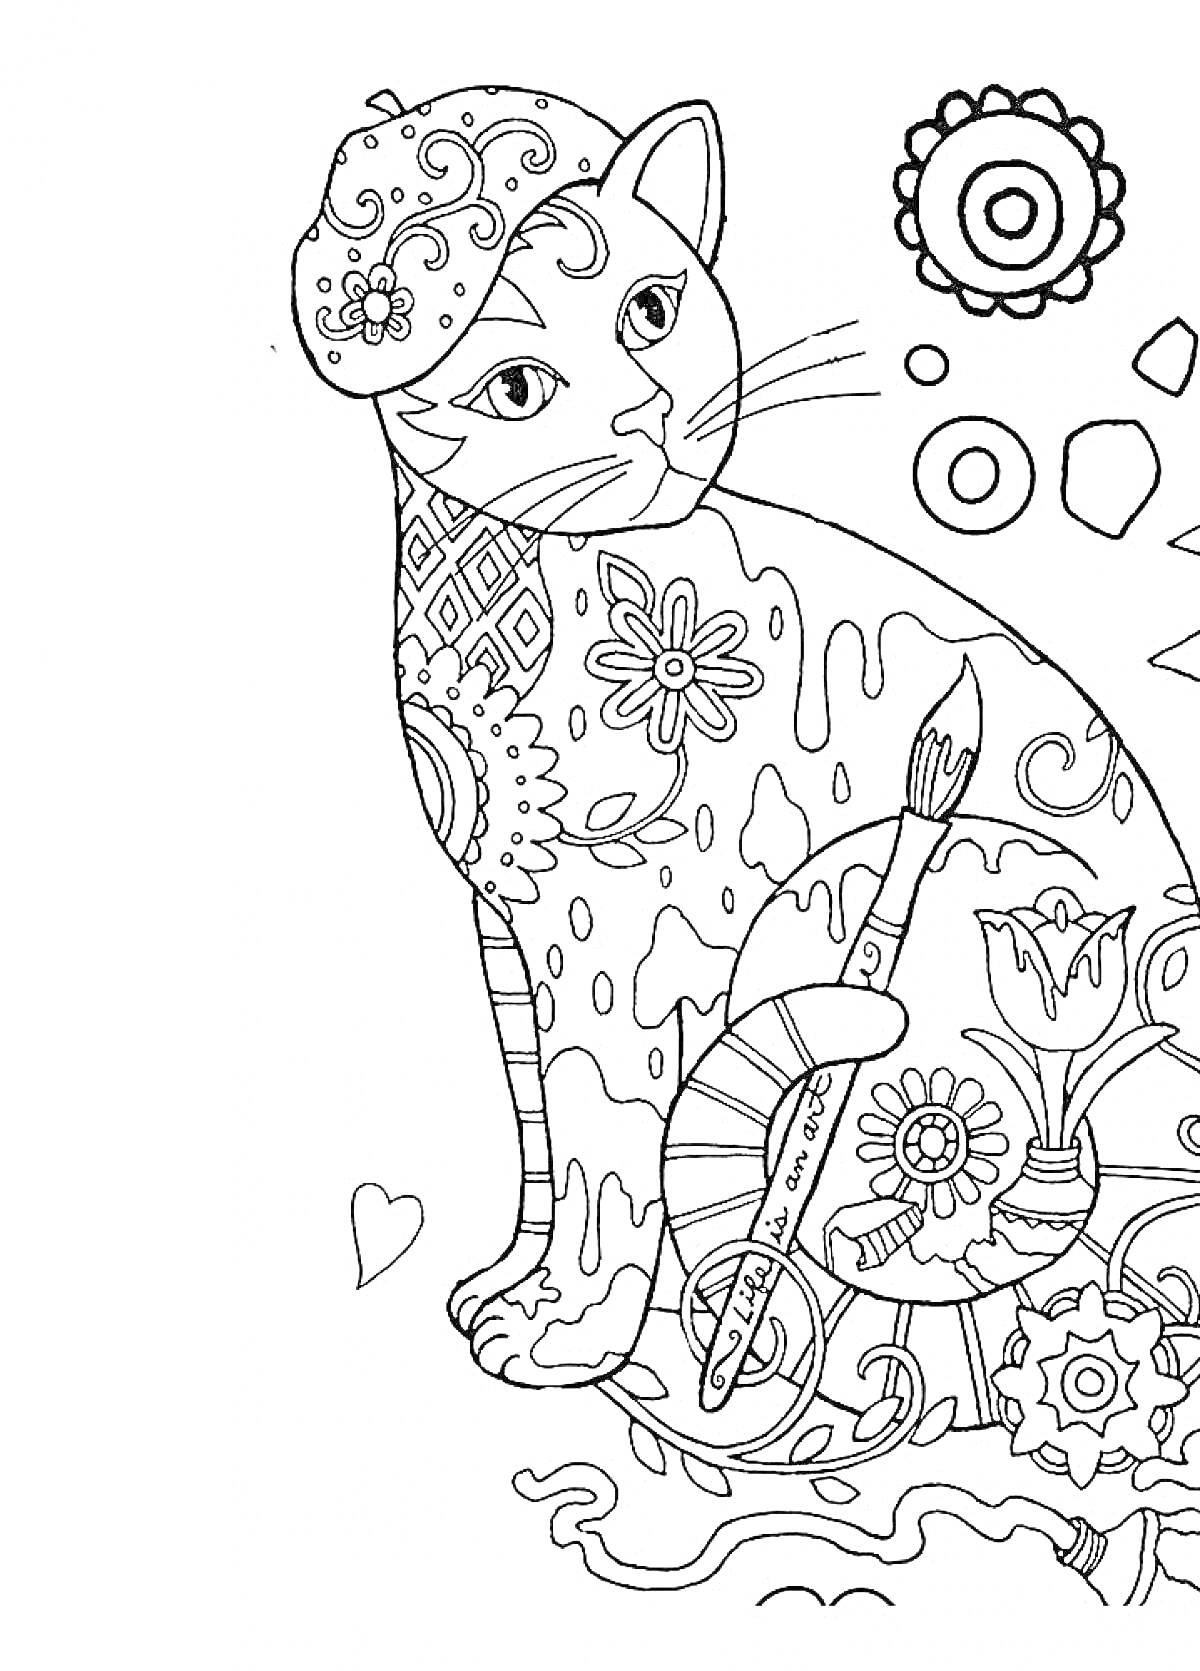 Раскраска Кот с элементами раскраски, кисти, палитры, цветов, узоров и геометрических фигур.